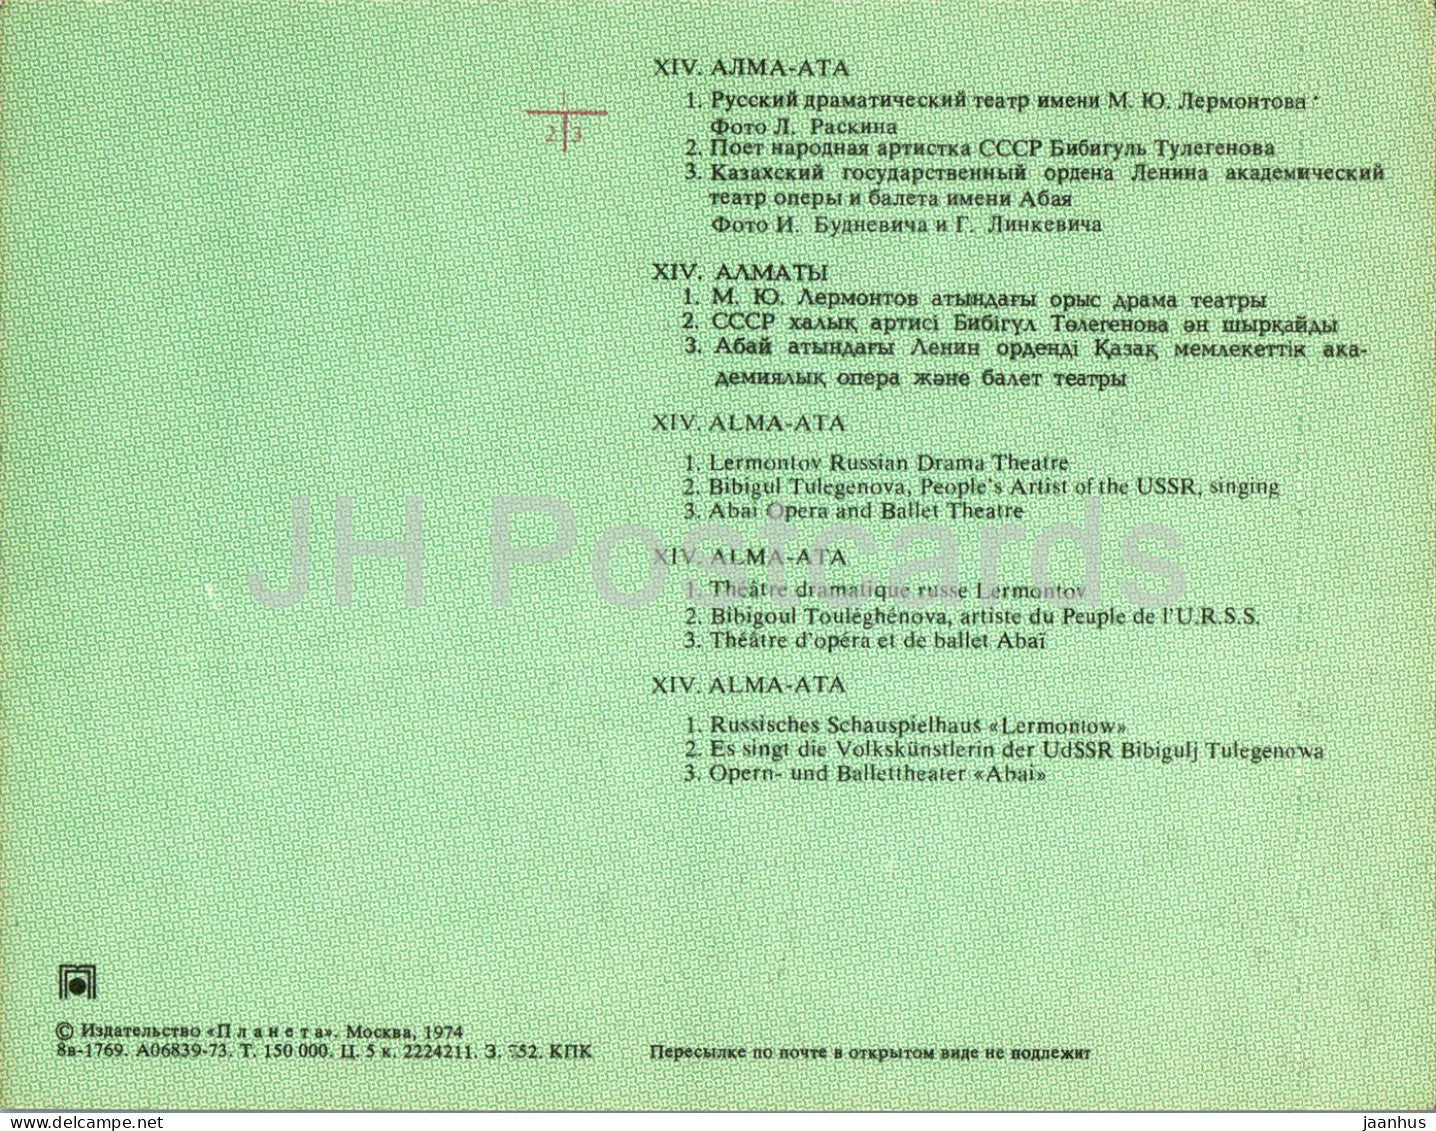 Almaty - Alma-Ata - Théâtre dramatique russe Lermontov - Théâtre d'opéra et de ballet Abai - 1974 - Kazakhstan URSS - inutilisé 